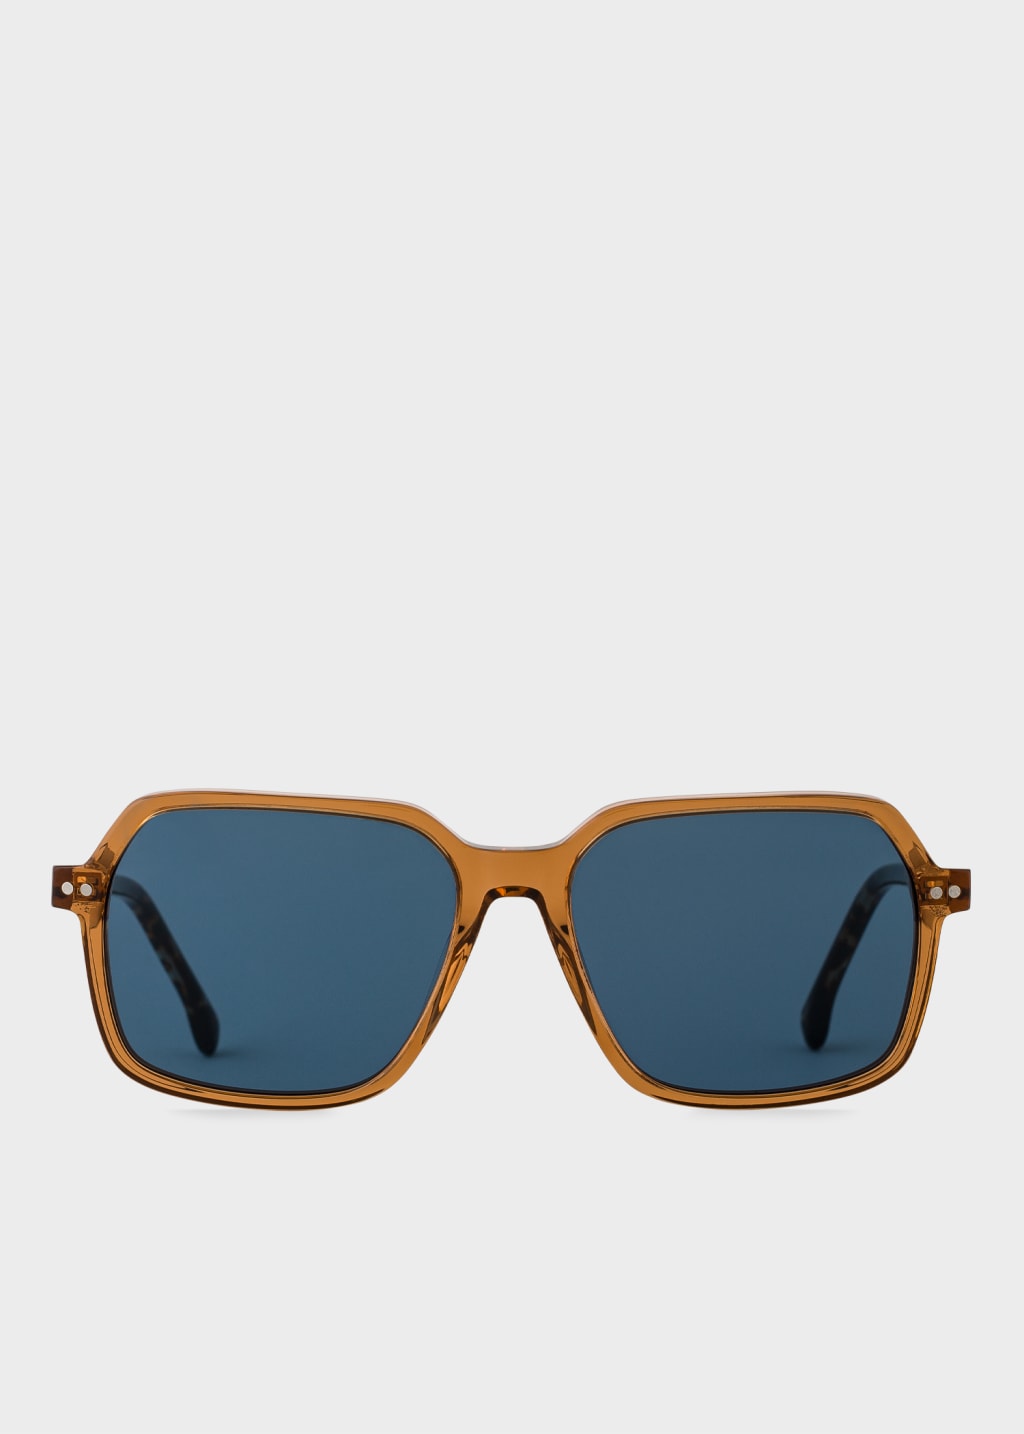 Product view - Havana Butterscotch 'Fleet' Sunglasses Paul Smith